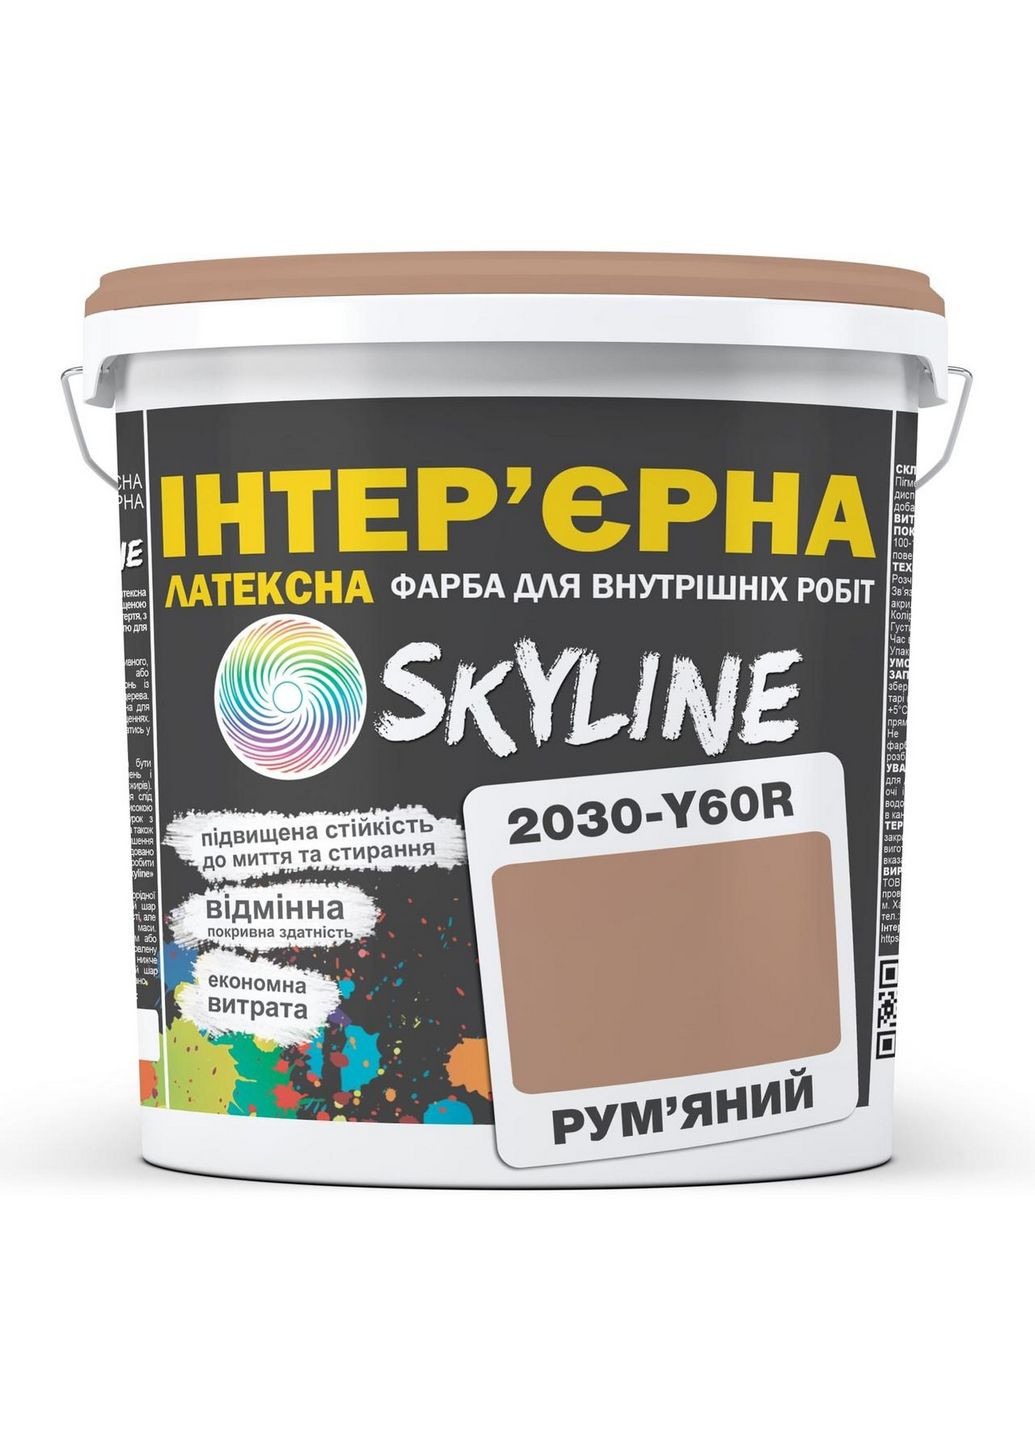 Краска Интерьерная Латексная 2030-Y60R Румяной 10л SkyLine (283327783)